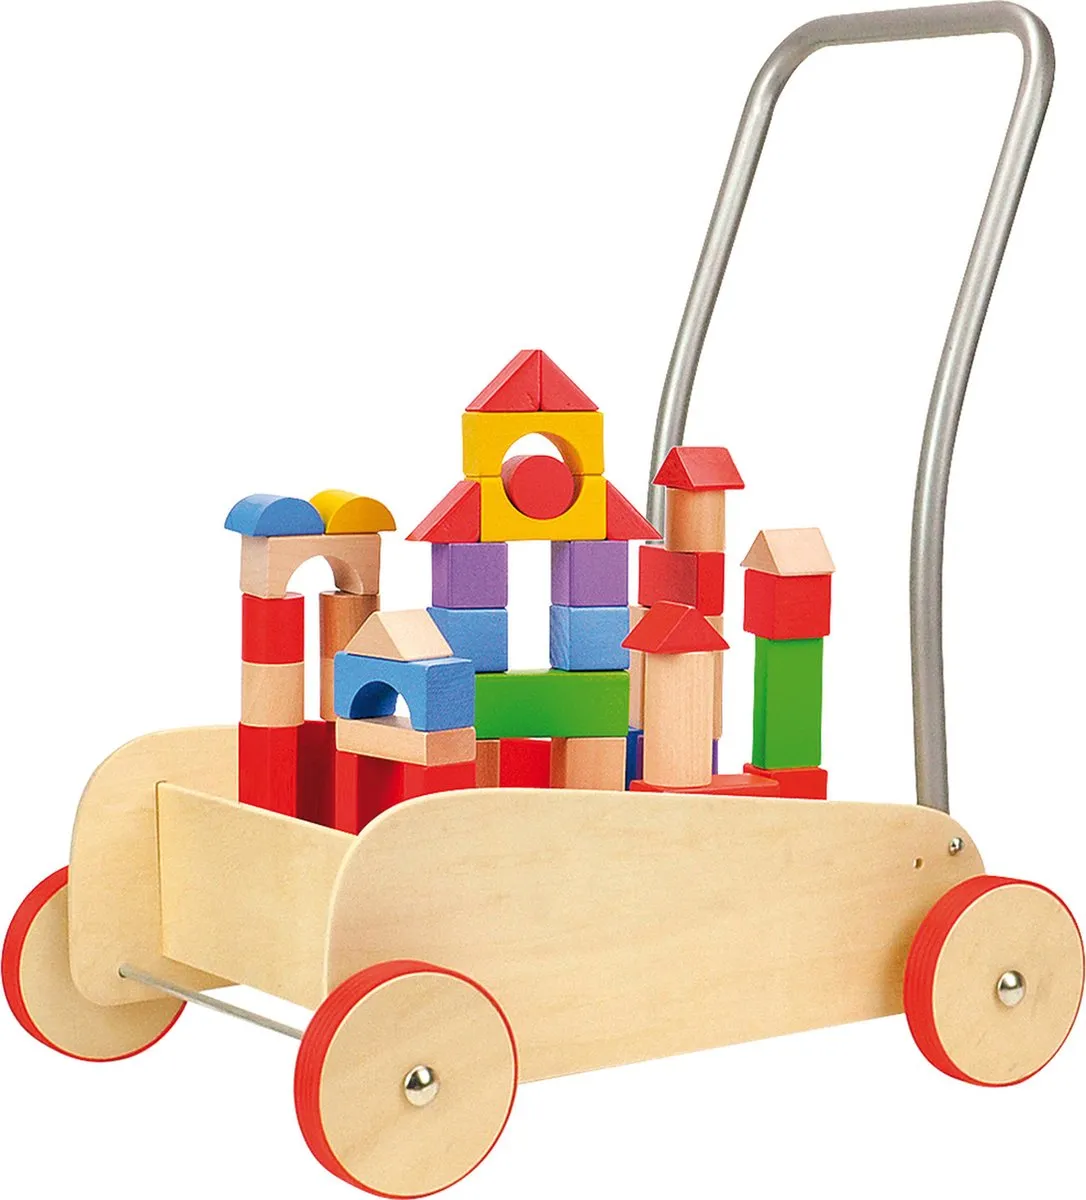 Blokkenkar hout - Met rubberen bandjes - leren lopen en leren bouwen! - Speelgoed vanaf 1 jaar speelgoed